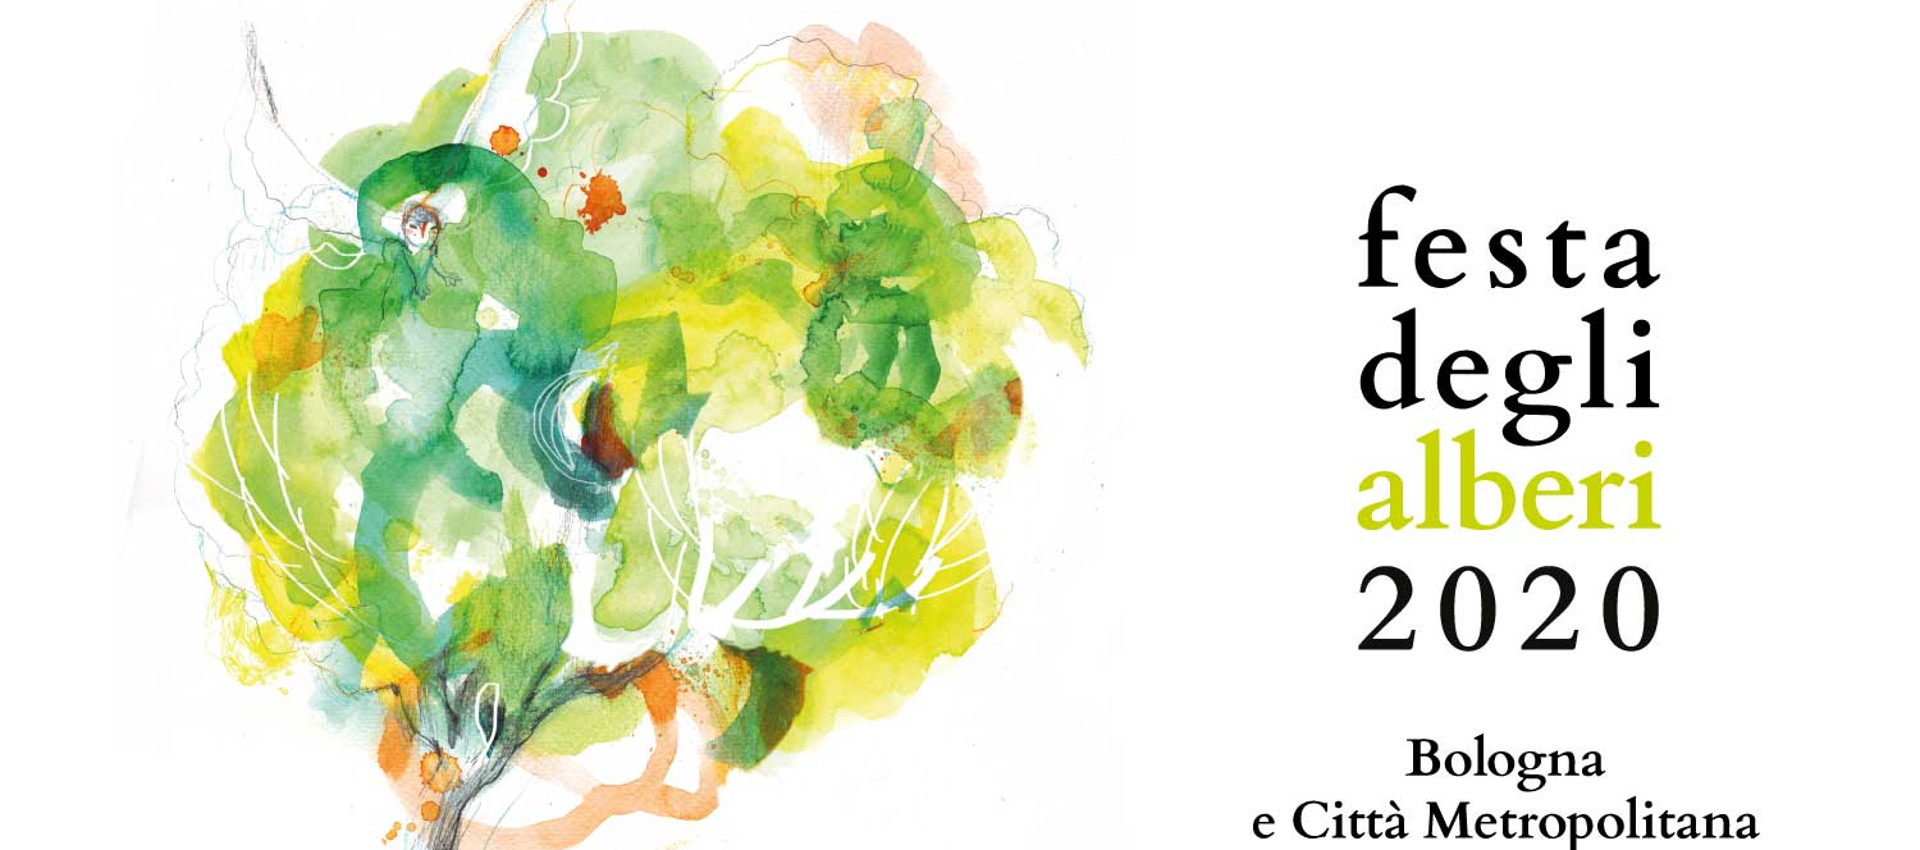 Banner della Festa degli alberi 2020 - Fondazione Villa Ghigi